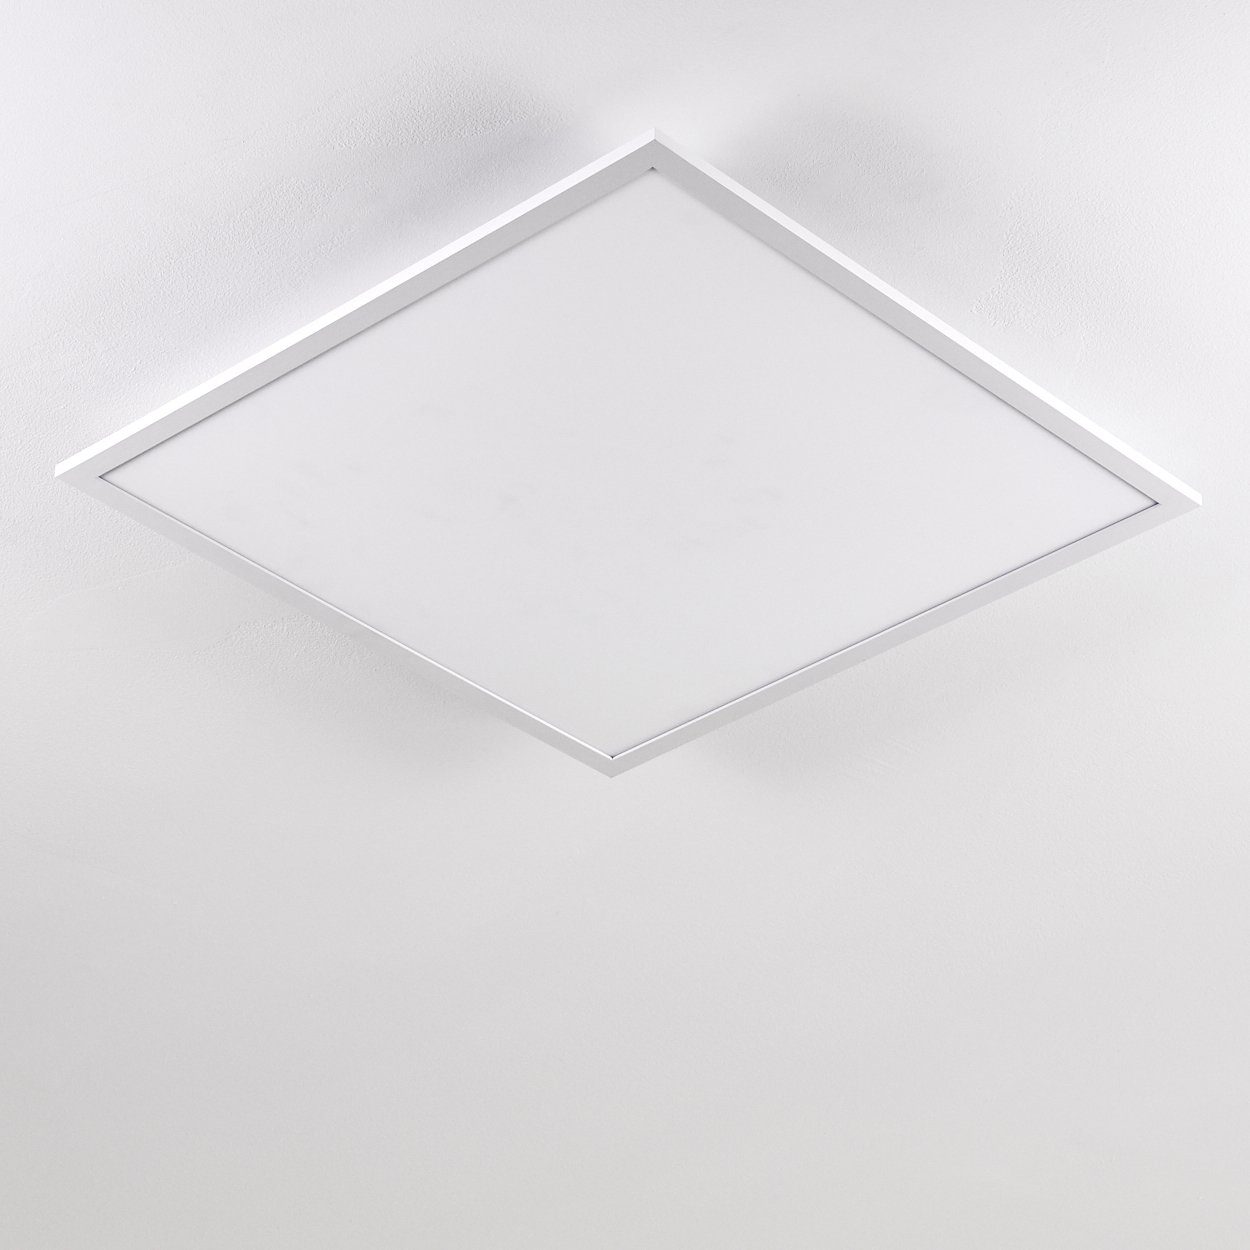 Panel modernes Lumen, 3000 Design 4800 aus Watt, Weiß, Kelvin, 40 in LED Deckenlampe Panel flachem eckige »Vacil« hofstein Aluminiumin Deckenpanel